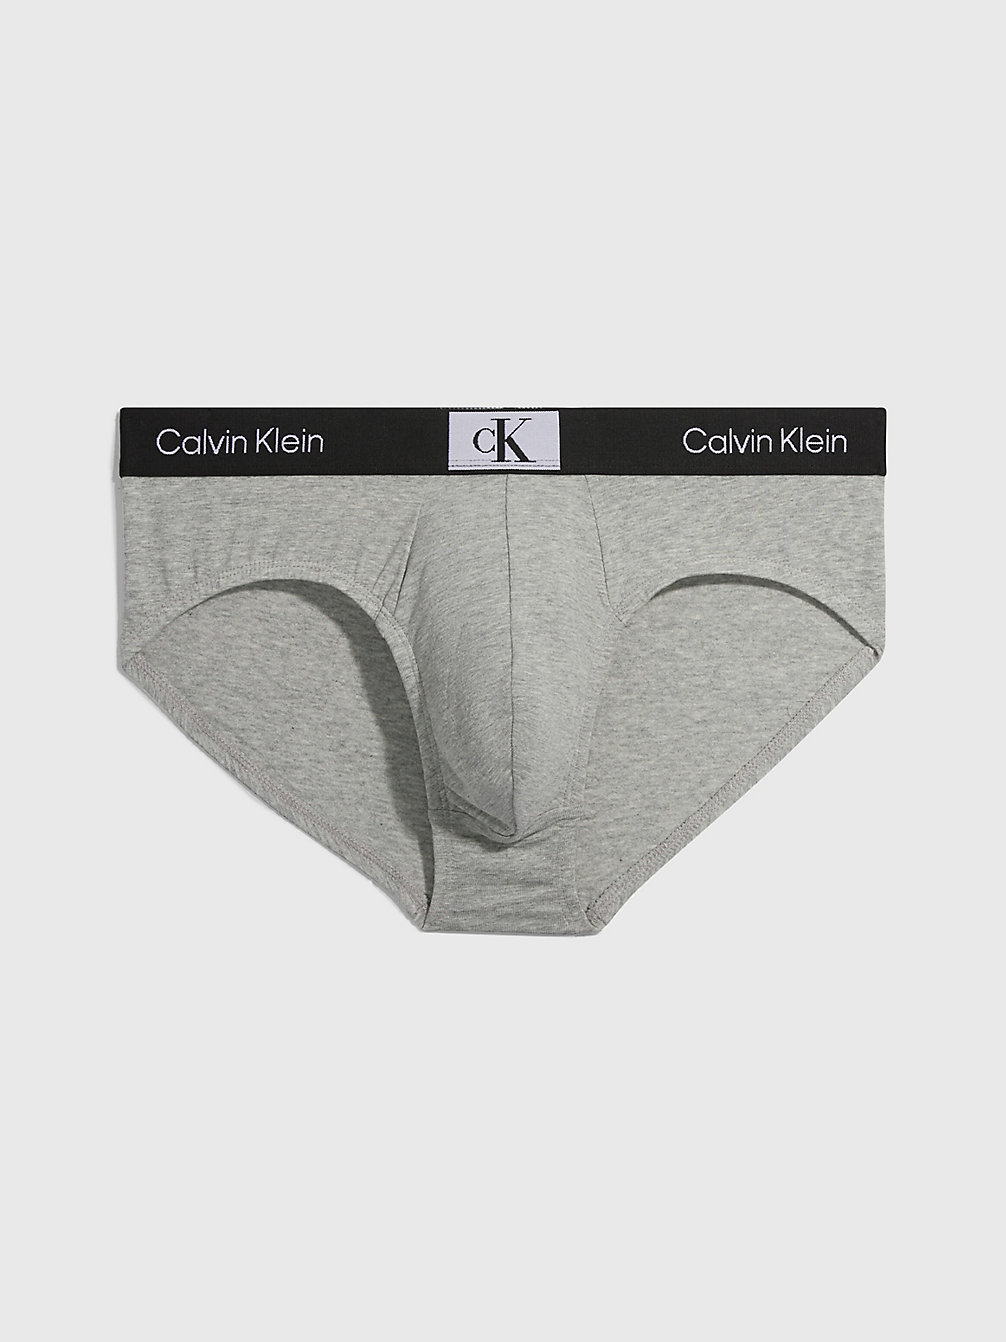 GREY HEATHER Boxer Long - Ck96 undefined hommes Calvin Klein